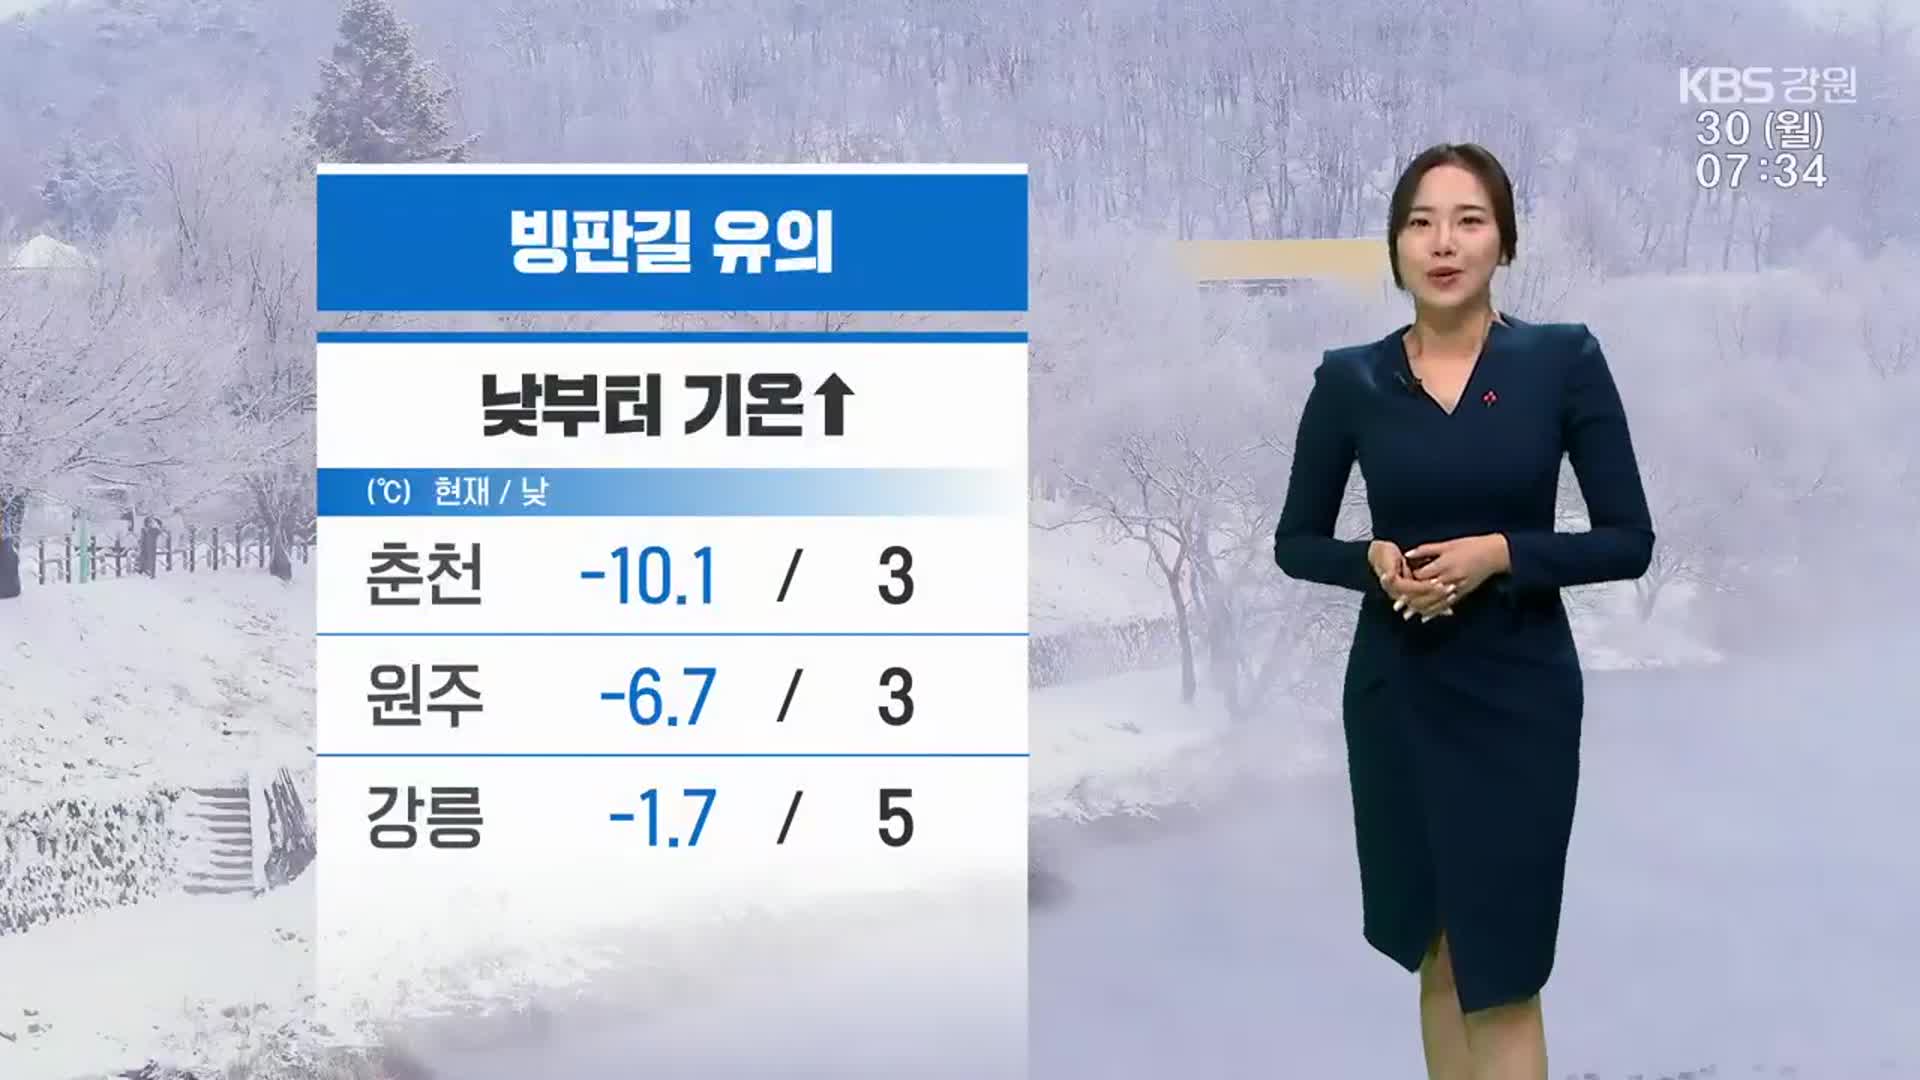 [날씨] 춘천 오전 최저기온 ‘영하 10.1도’…강원 낮부터 기온 올라